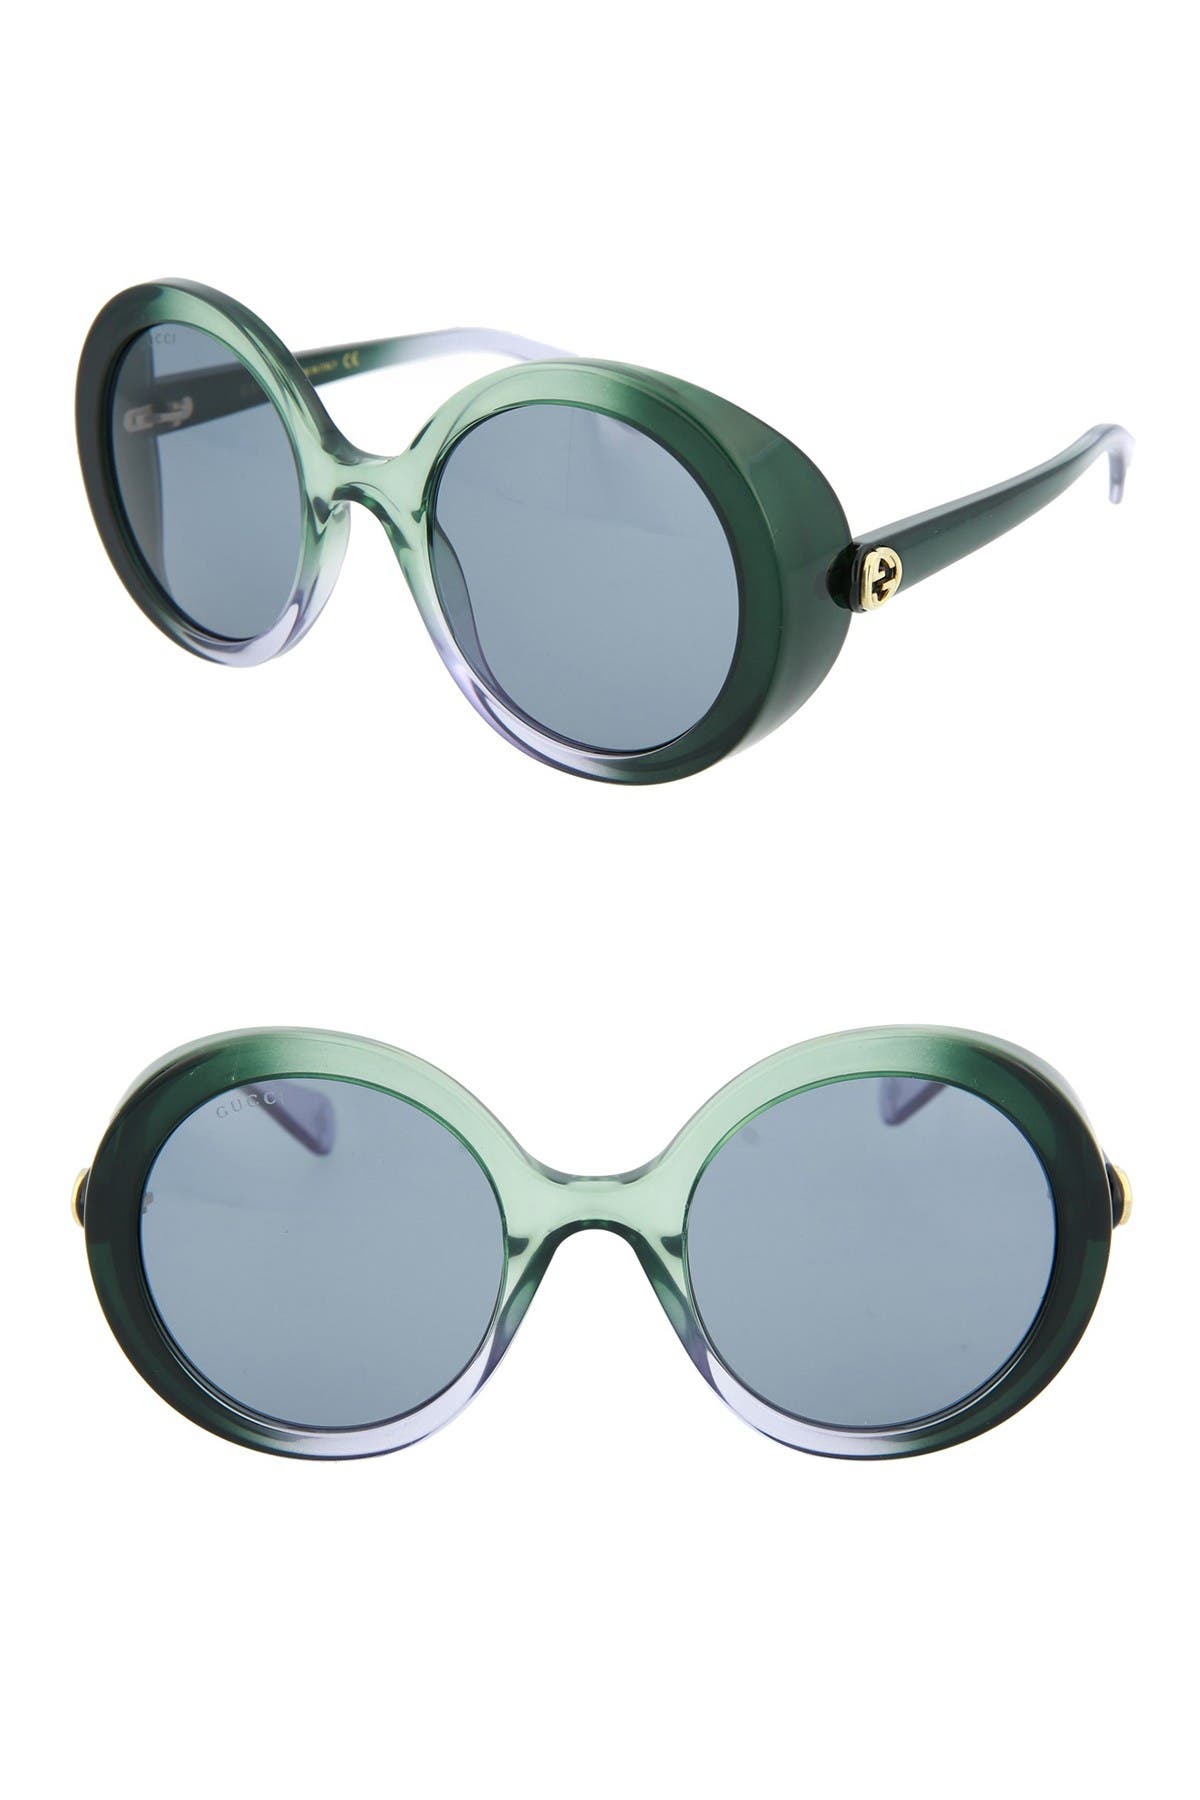 gucci 53mm round sunglasses